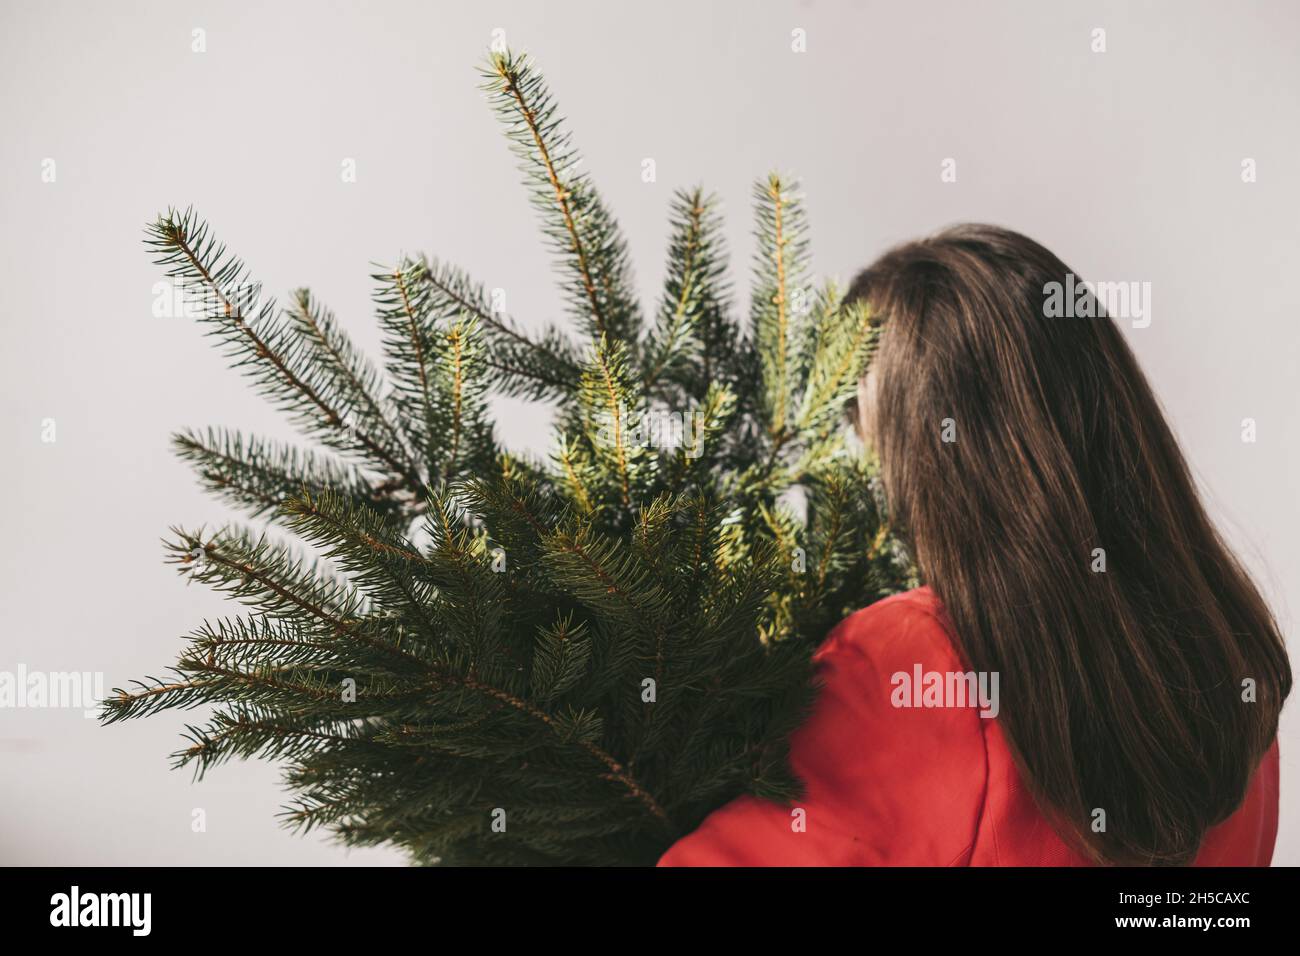 La ragazza la girò indietro in una giacca rossa che tiene un ramo dell'albero di Natale su uno sfondo grigio. concetto di conservazione della foresta. Foto di alta qualità Foto Stock